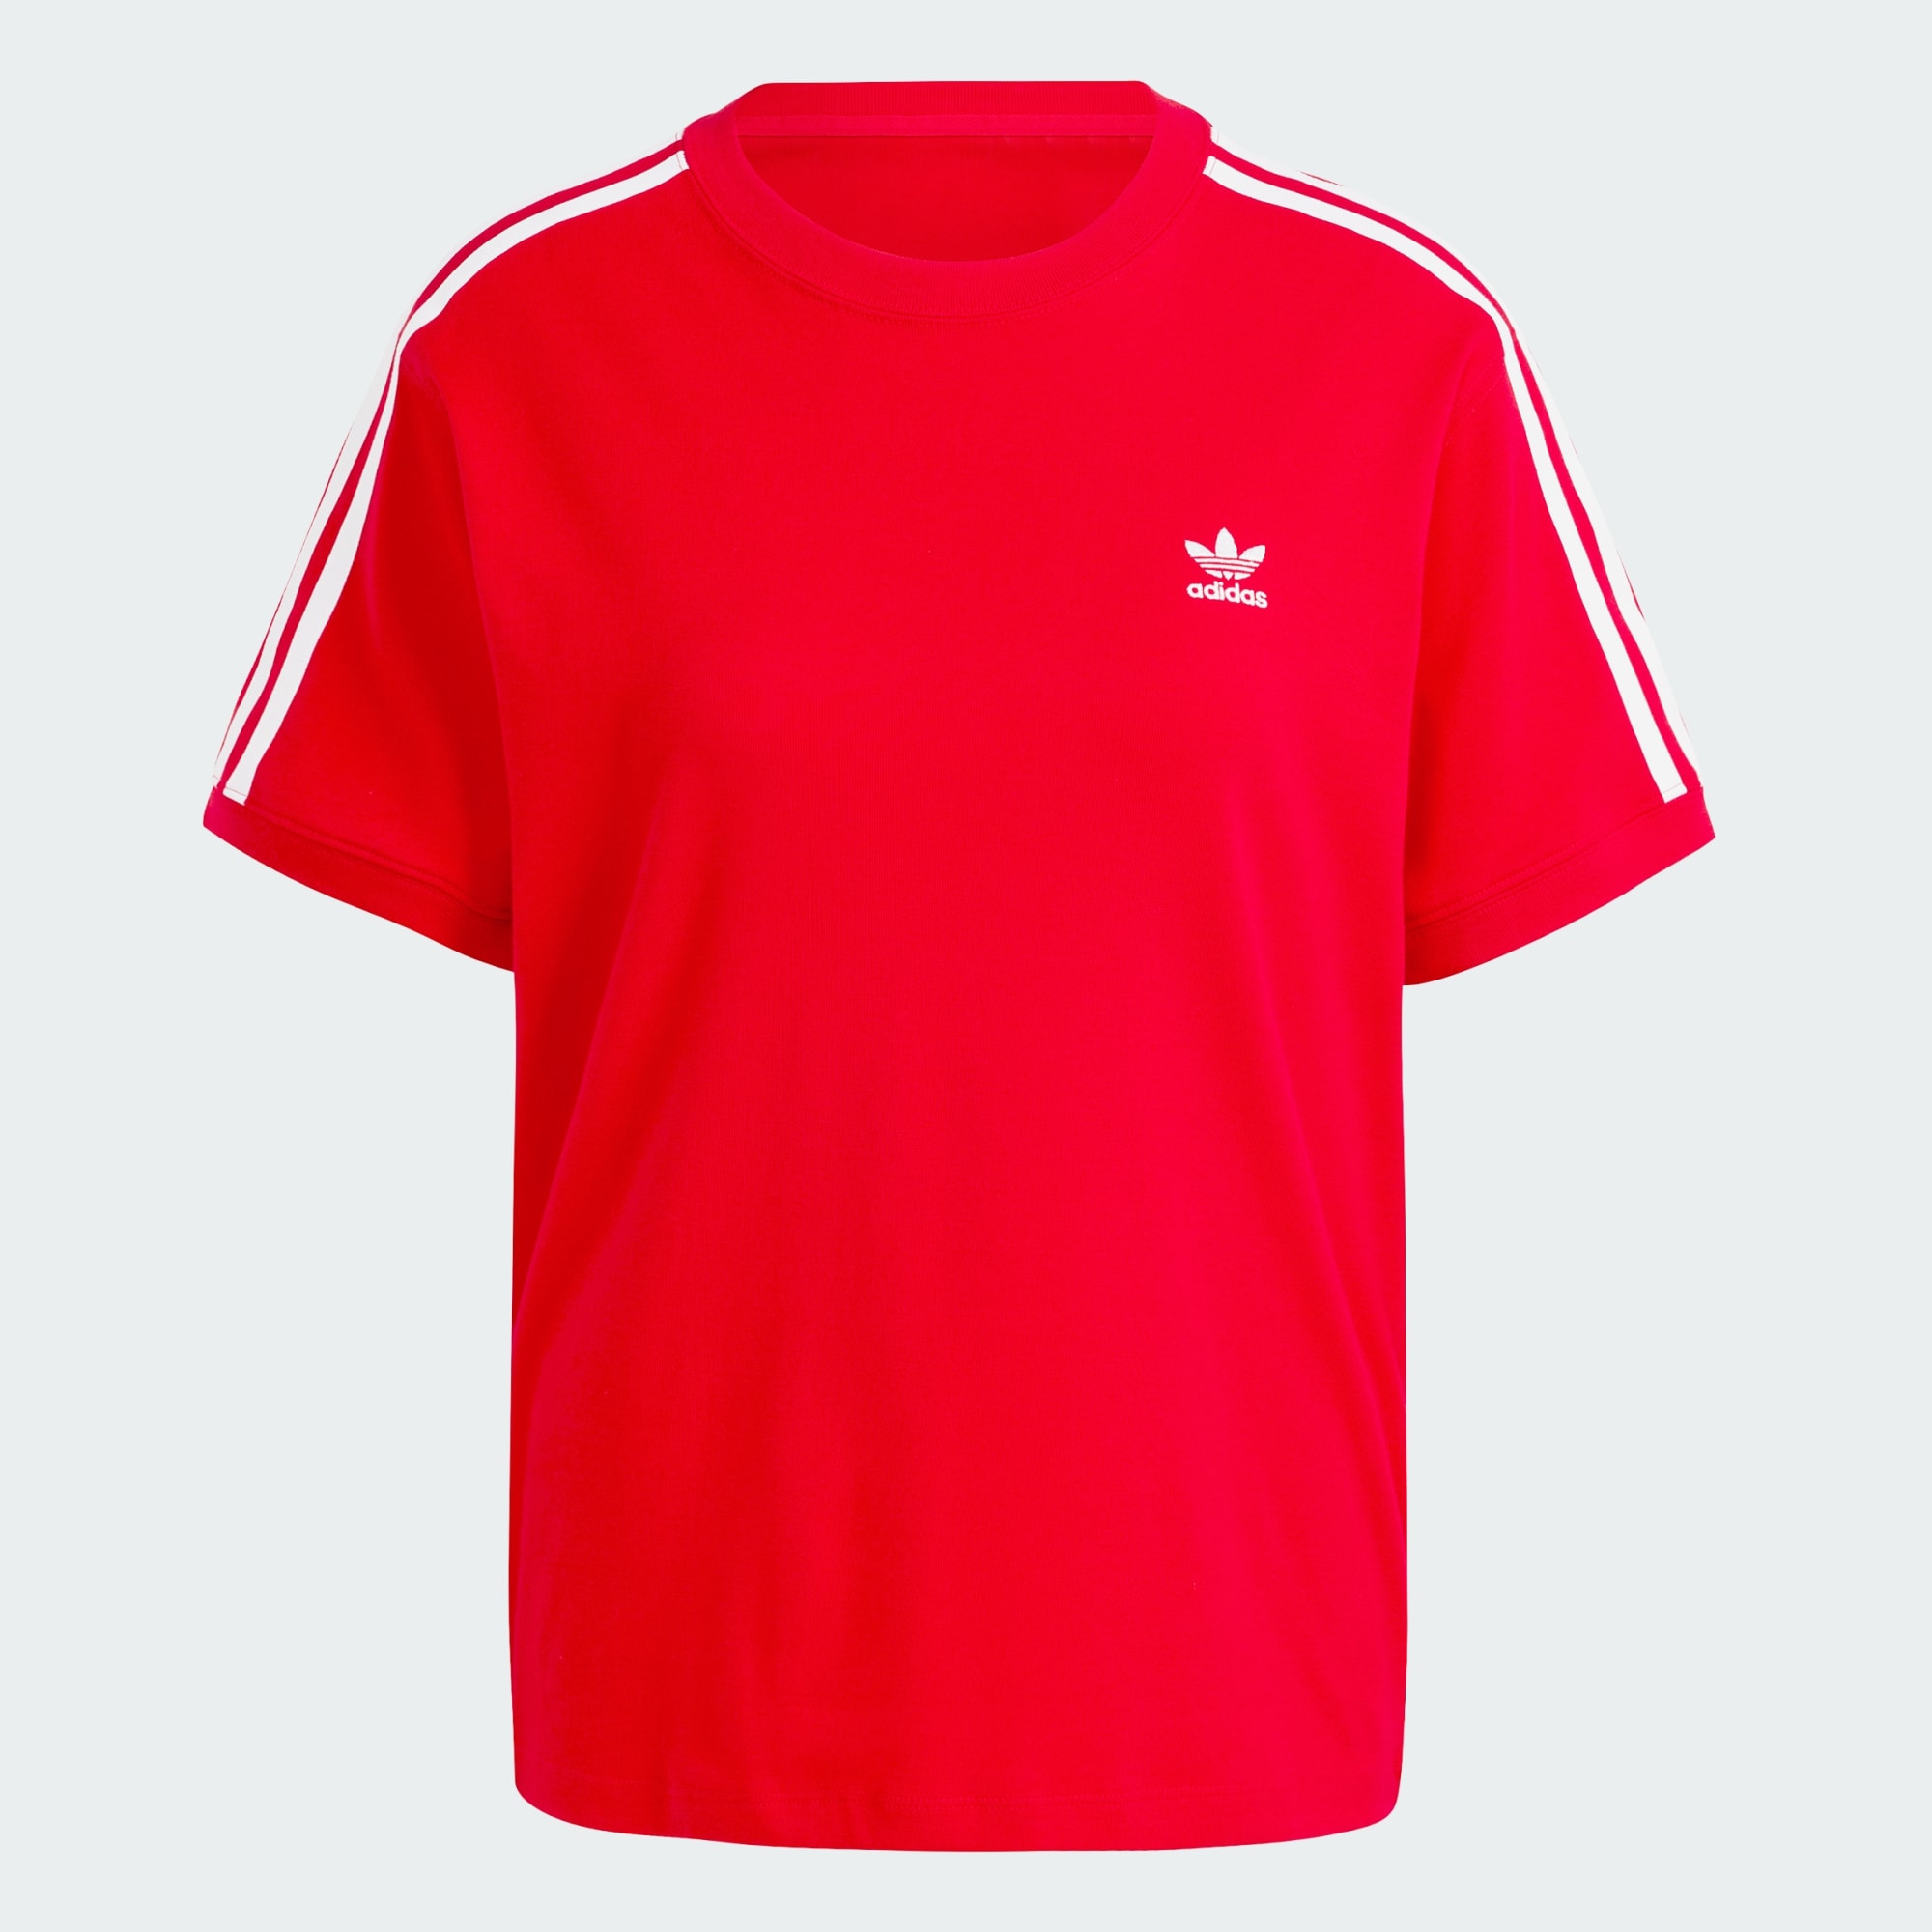 Adidas Better Scarlet Originals 3 Stripe Womens T Shirt